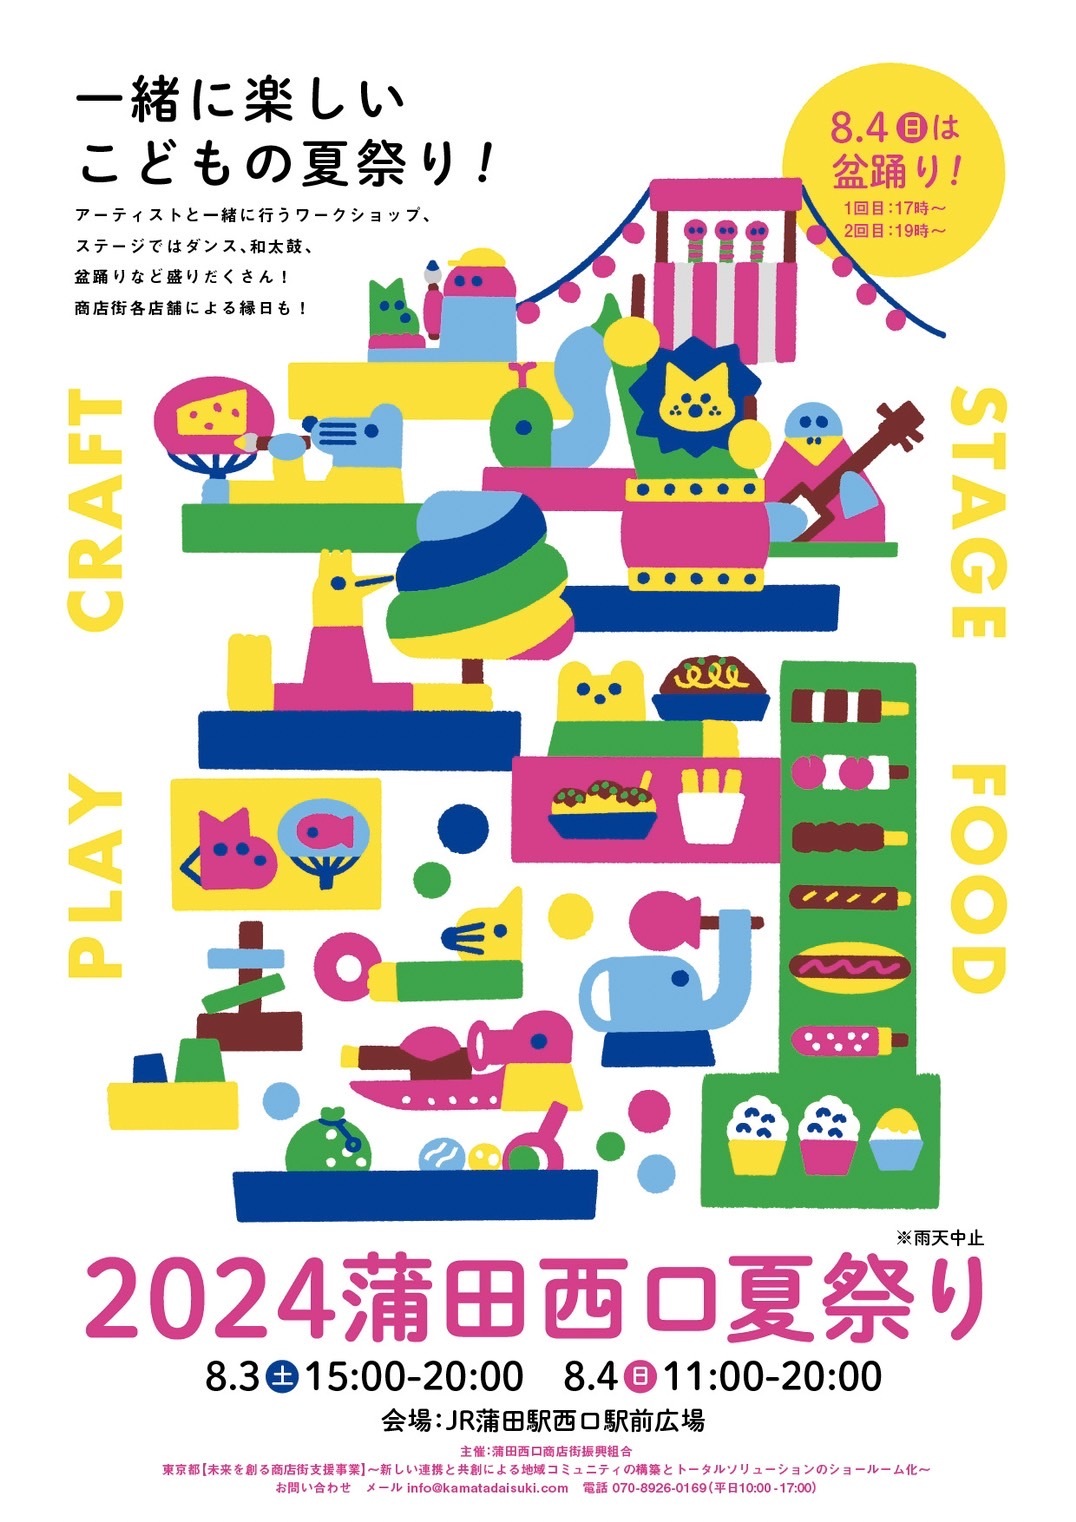 一緒に楽しいこども向けワークショップ「2024蒲田西口夏祭り」を
蒲田にて8月3日(土)、4日(日)に開催！